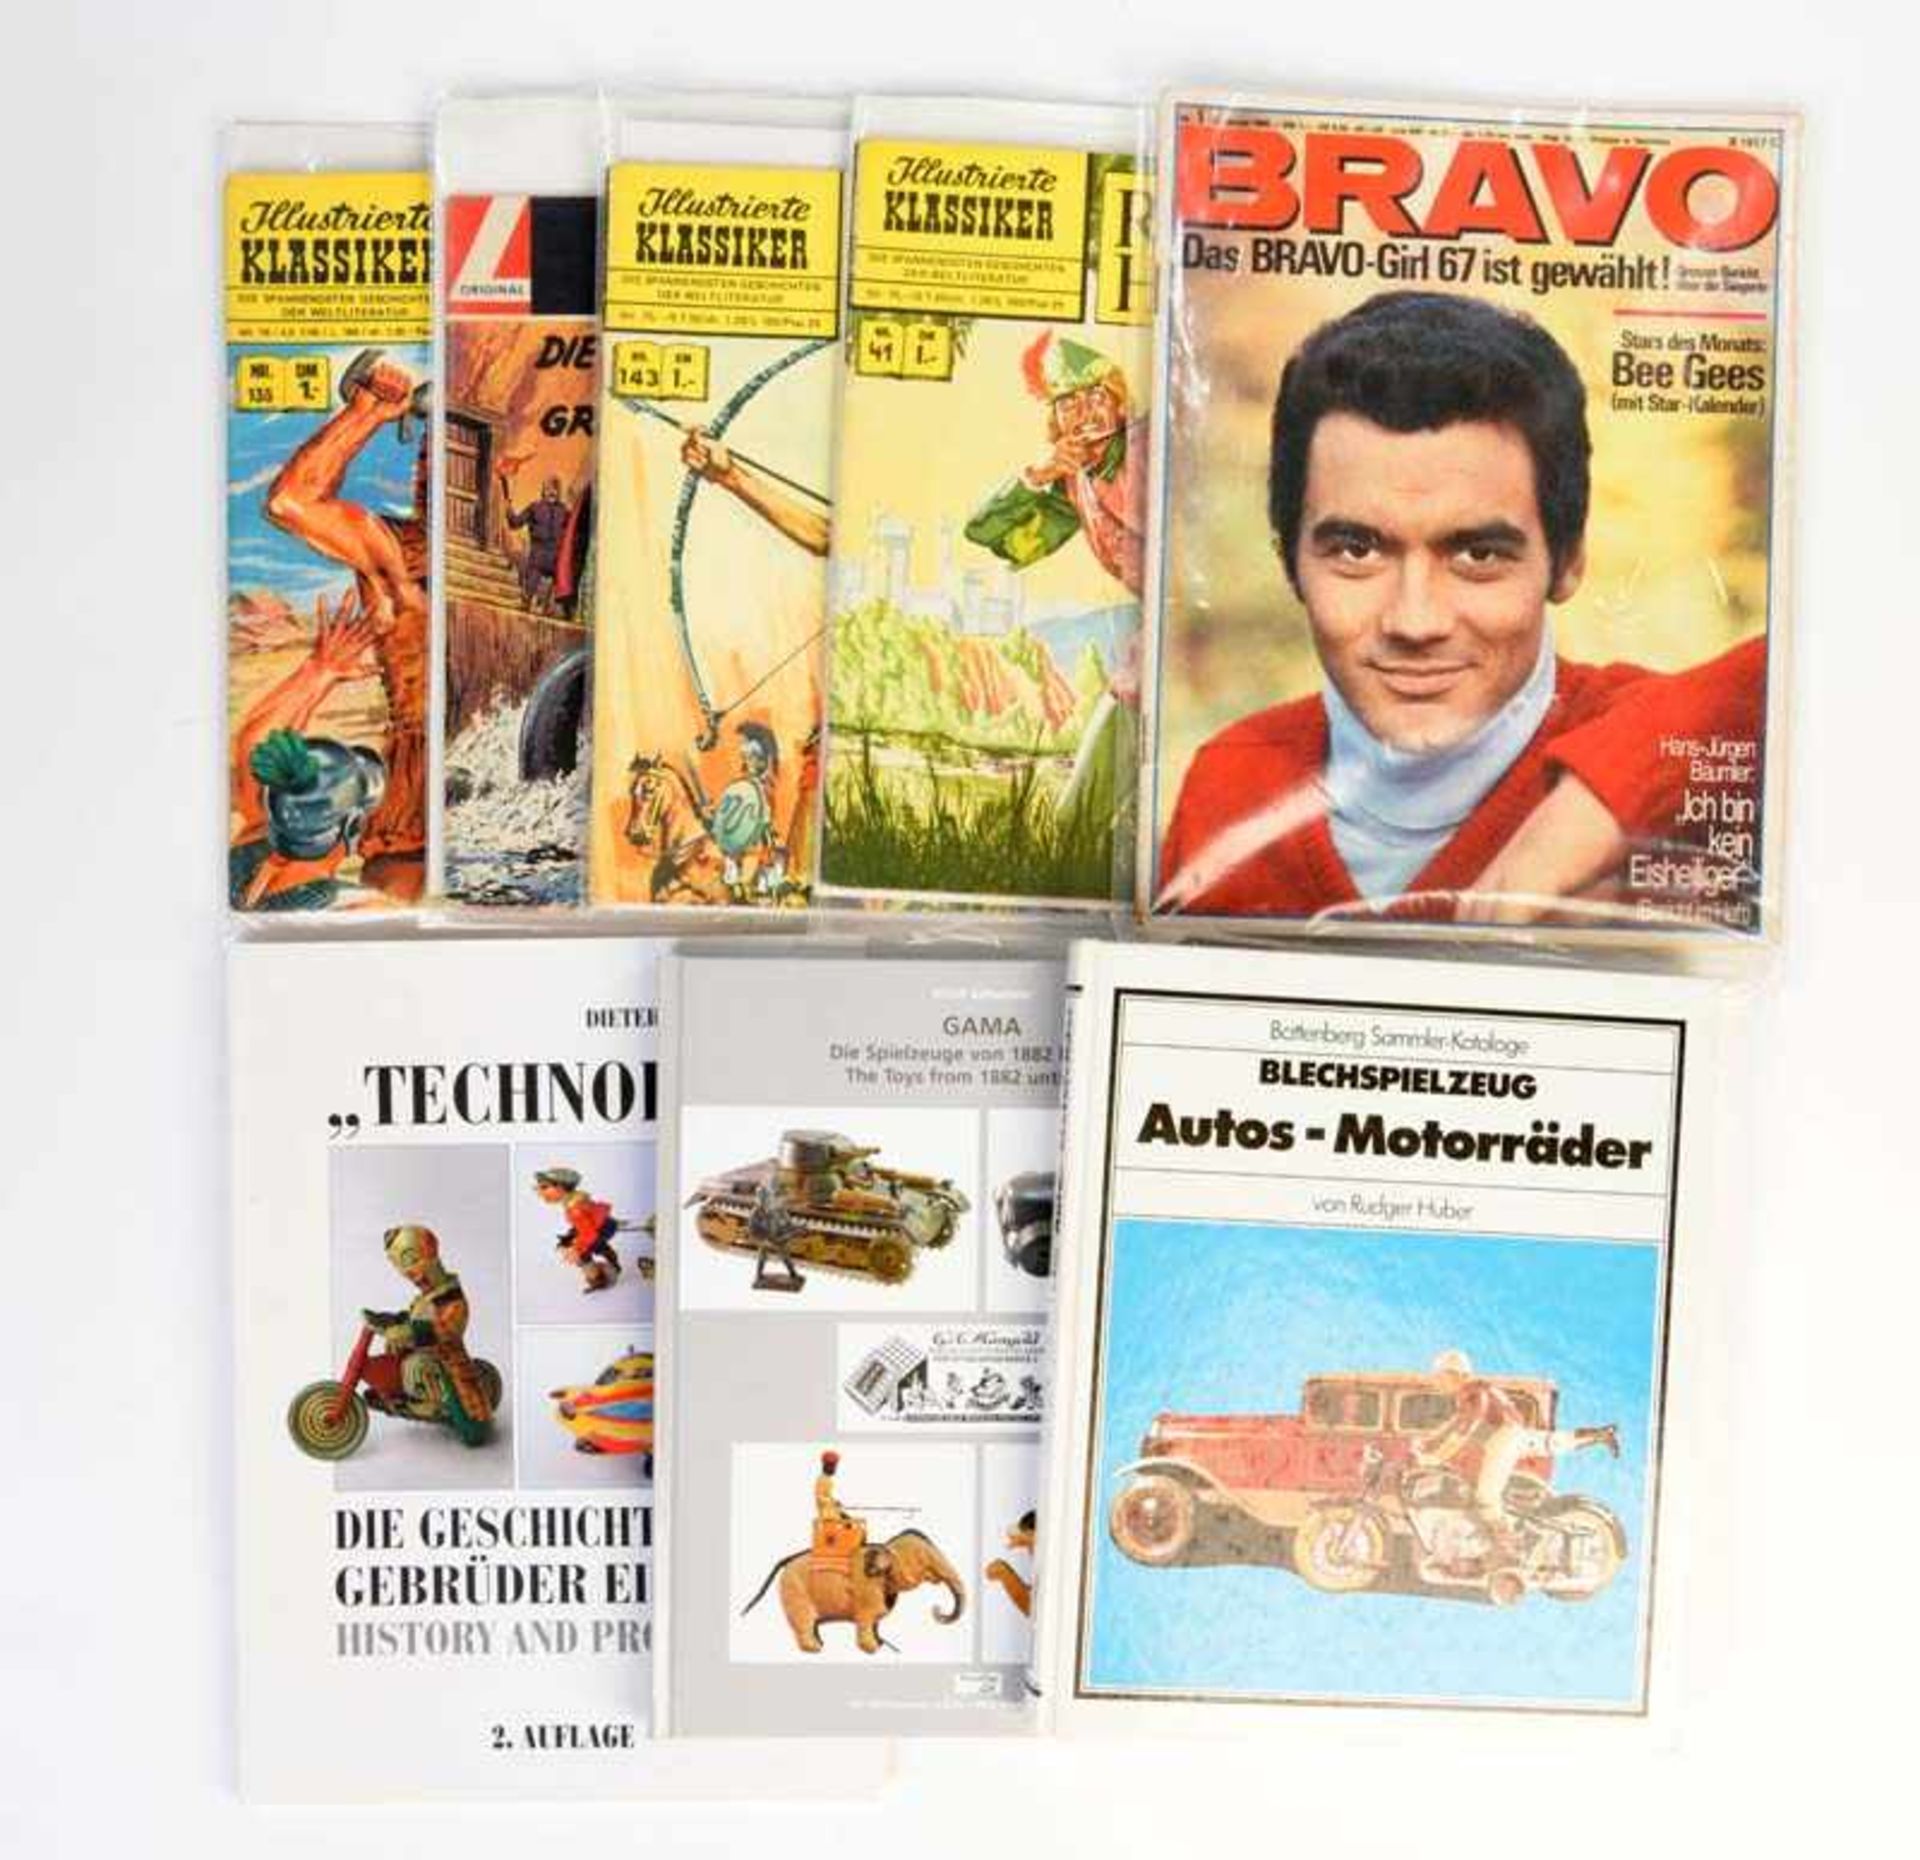 3 Spielzeugbücher + 5 Varia Hefte, meist guter Zustand3 Books Toys + 5 Magazines, mostly good